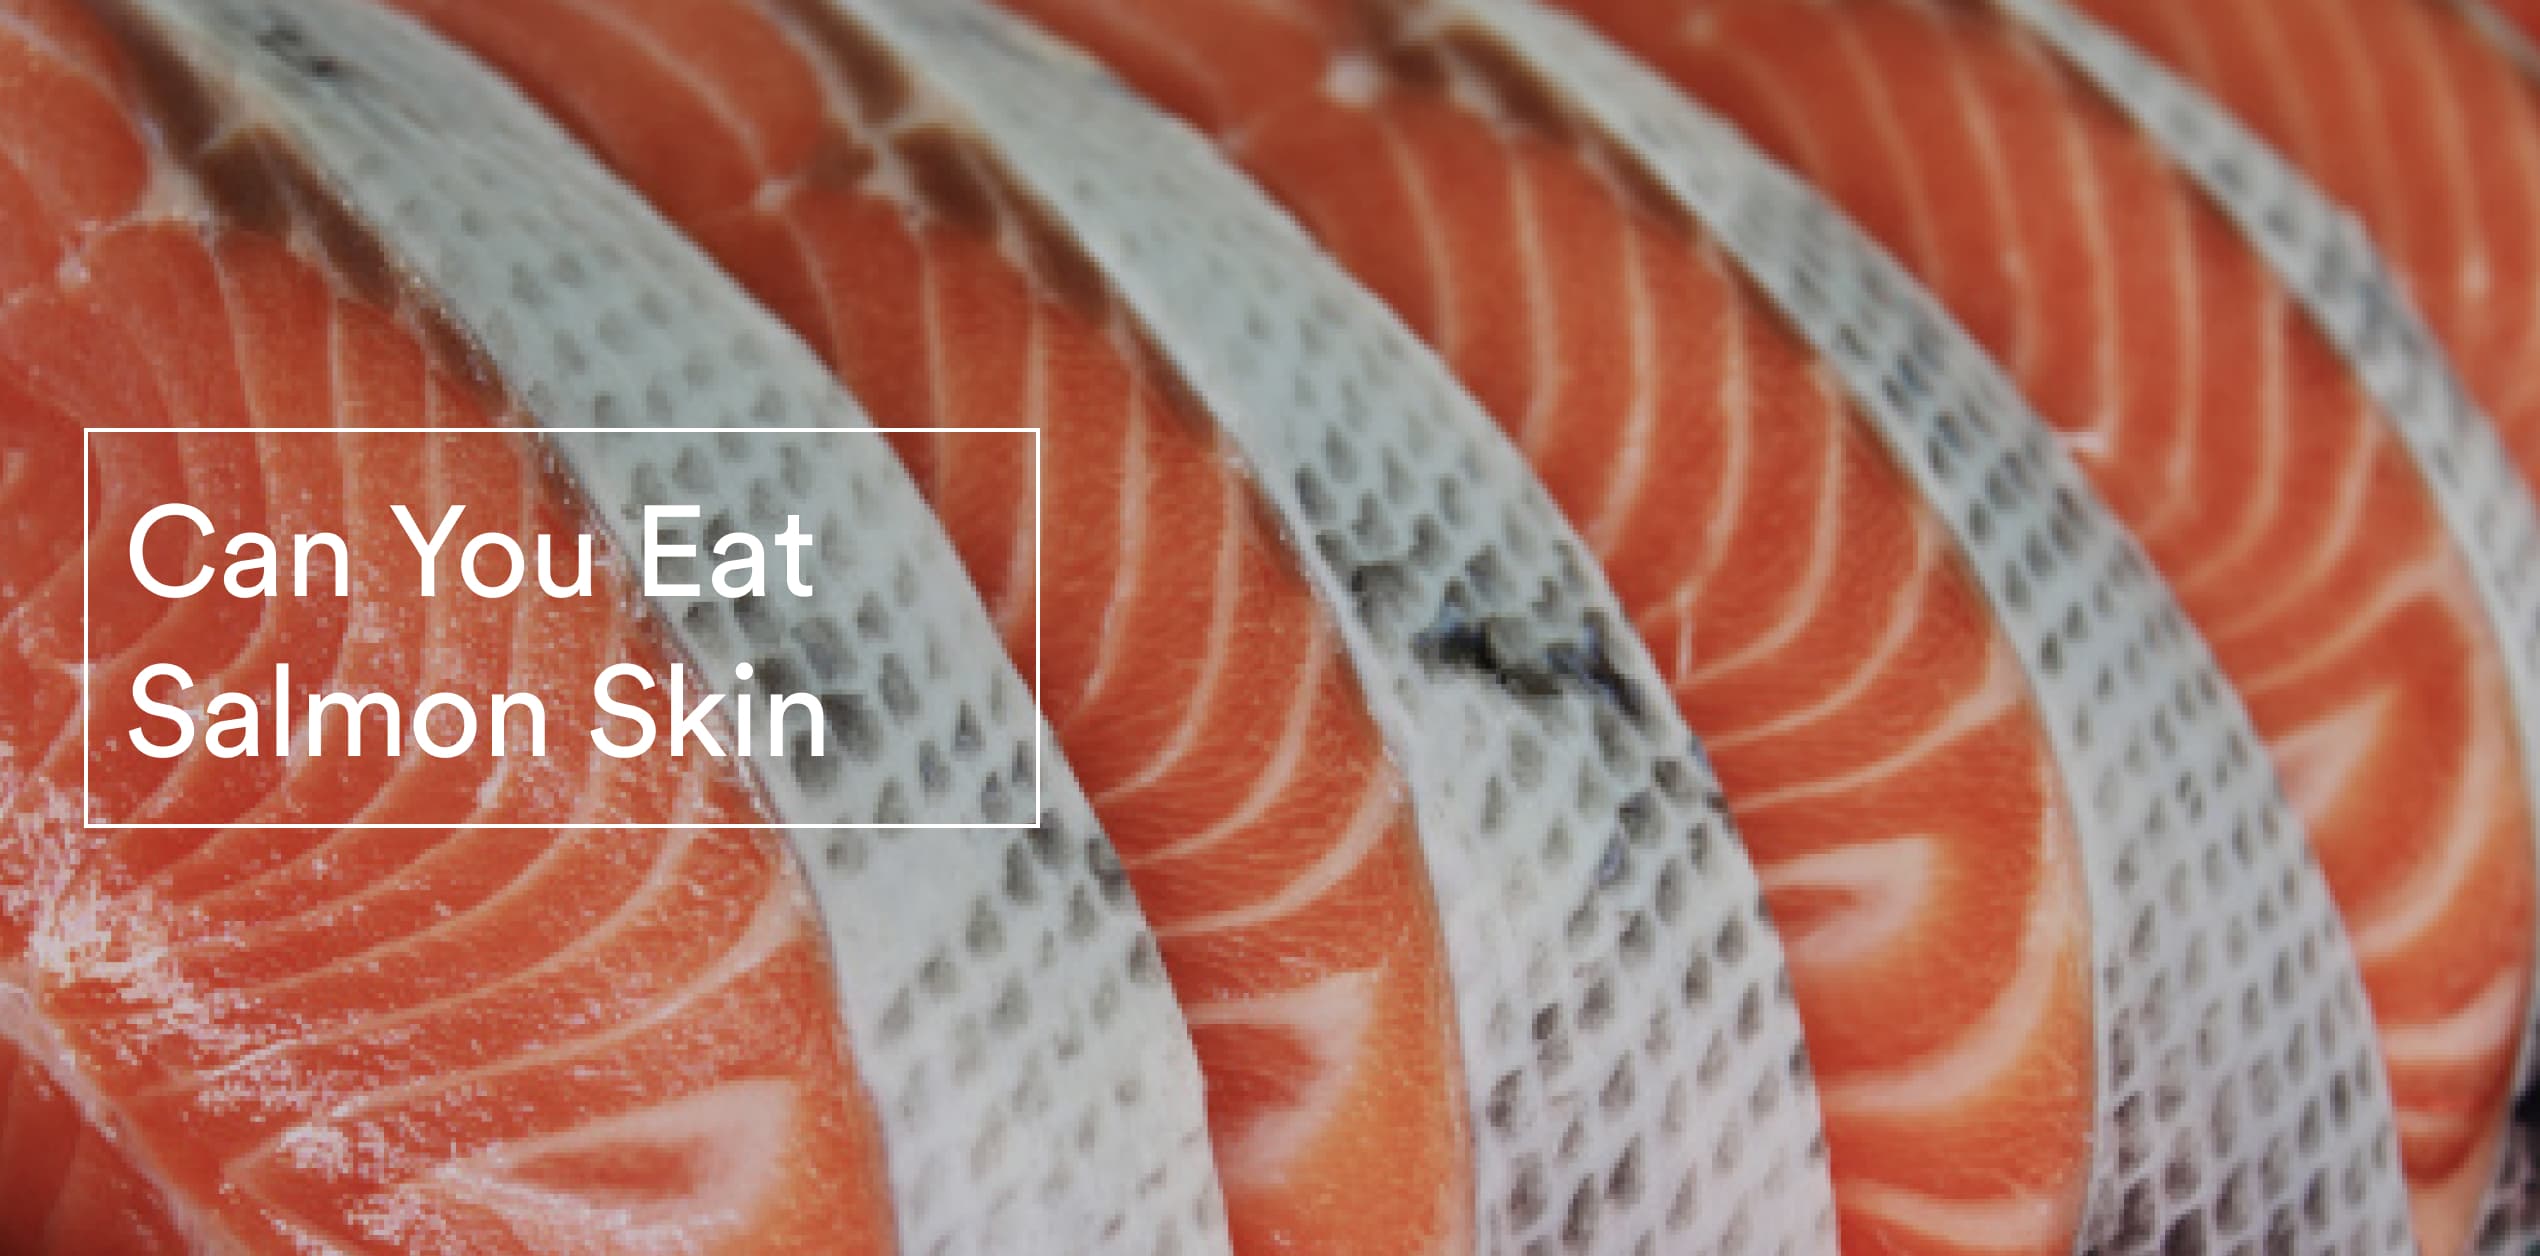 Can you eat salmon skin